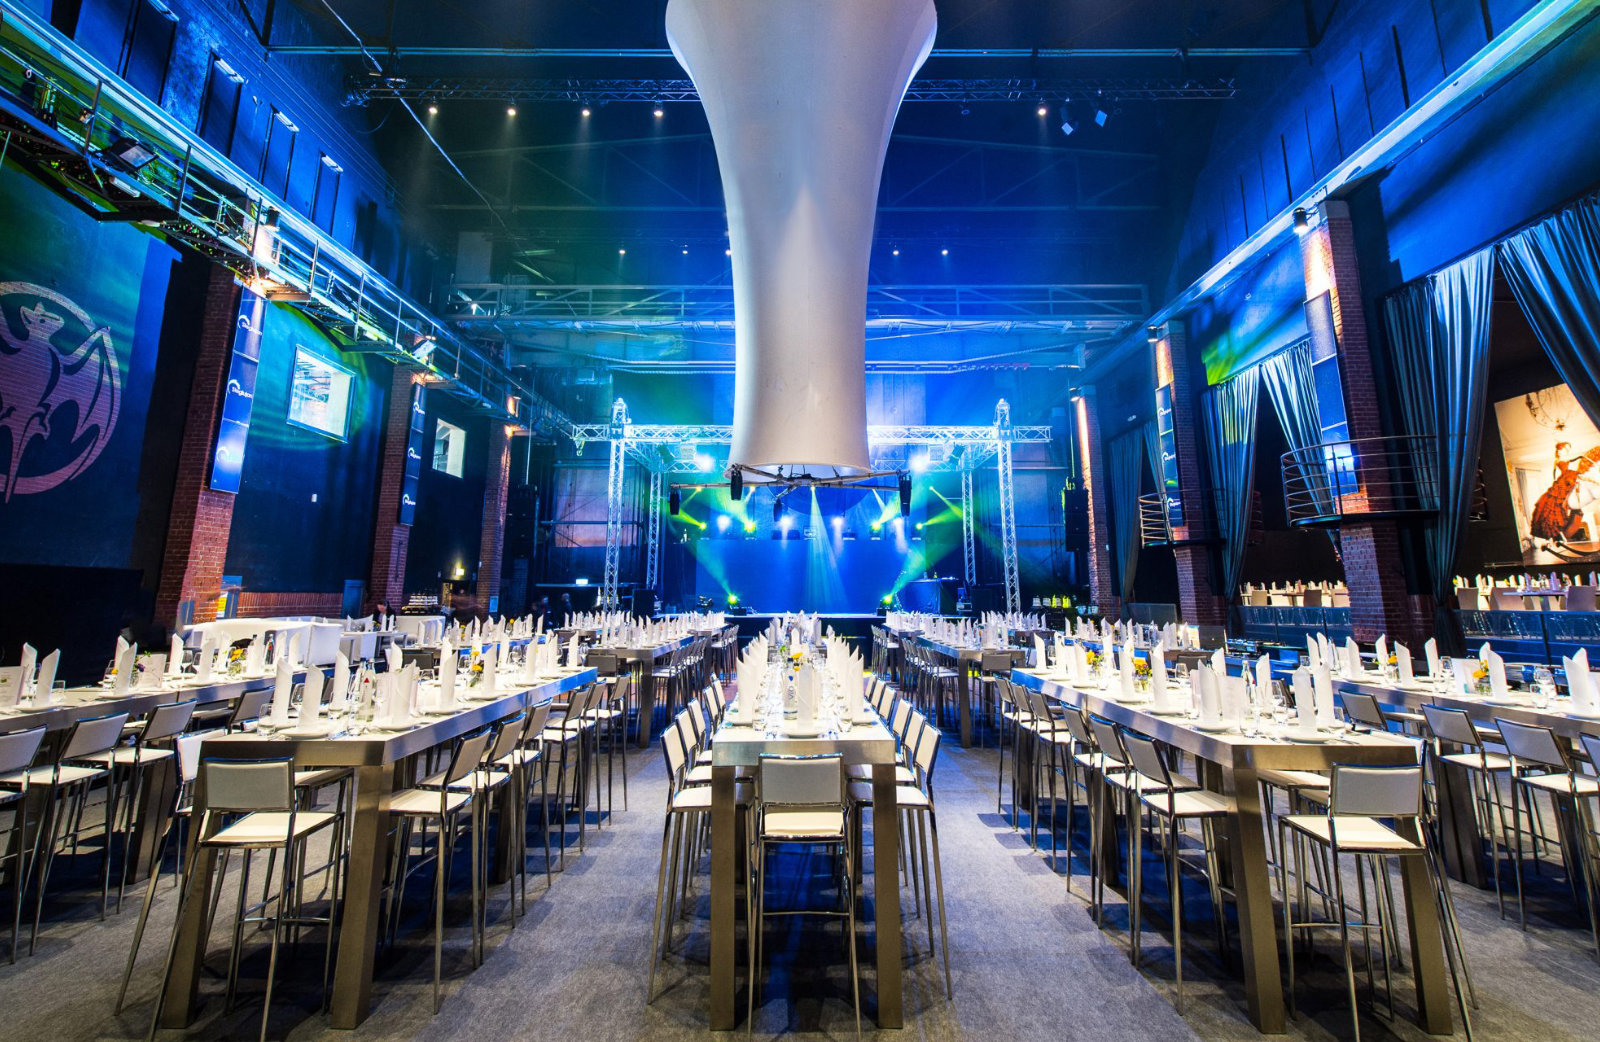 Foto: Großer Veranstaltungsraum mit hohen Decken, langen gedeckten Tischen, blauer Beleuchtung und Bühne.